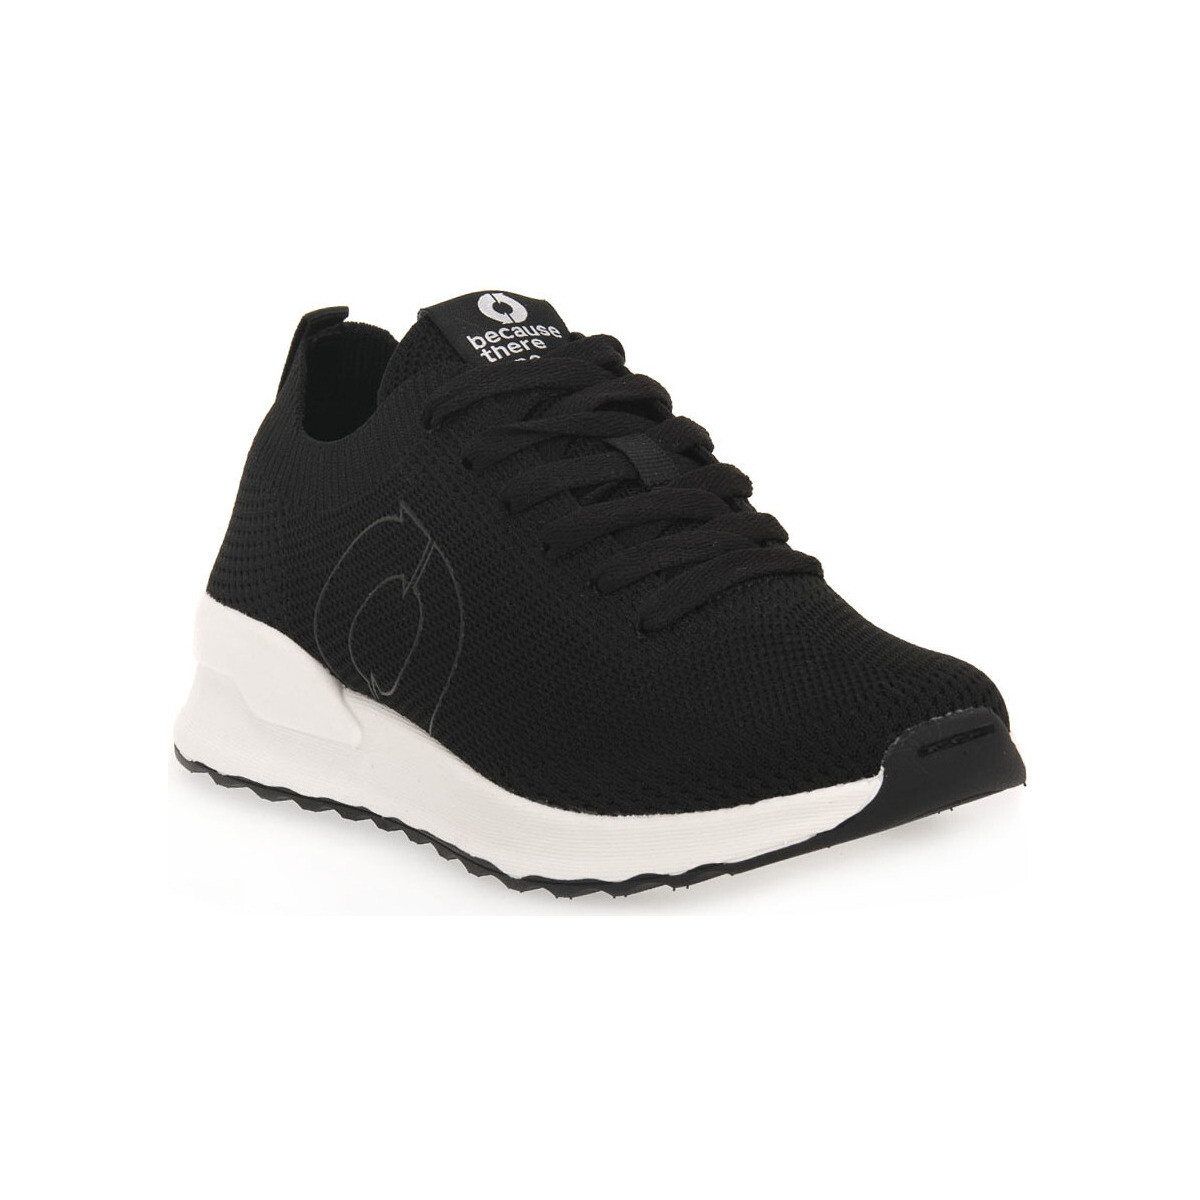 Παπούτσια Γυναίκα Sneakers Ecoalf BLCK CONDENKNIT Black